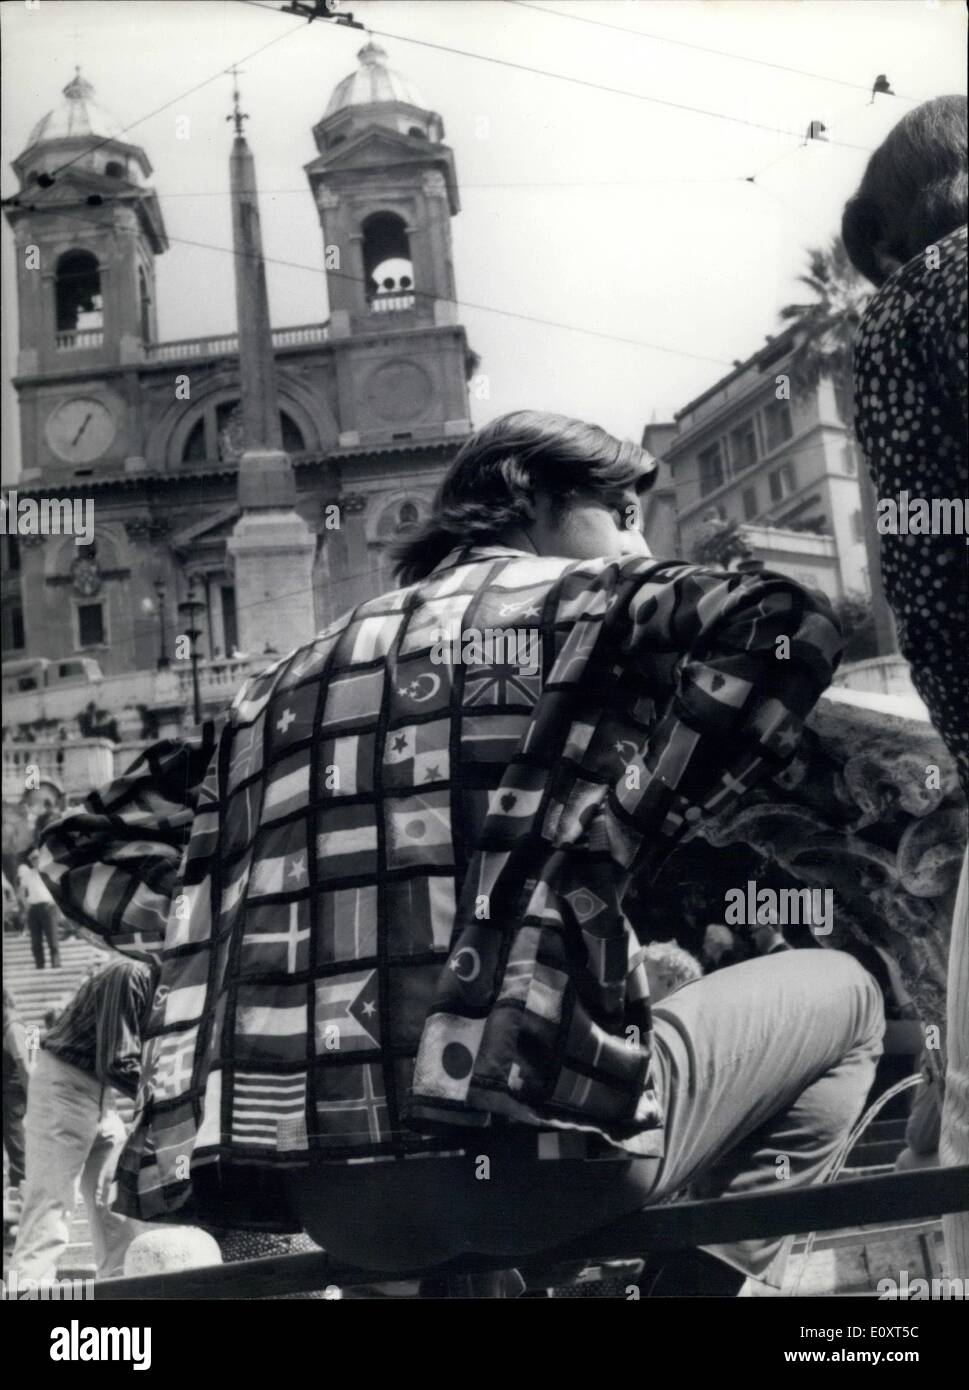 Sept. 09, 1967 - der Händler von den Geschäften aufgestellt nahe dem spanischen Platz und Trinita dei Monti, protestierte der Rom Behörden zur Ursache für die zahlreichen '' lange Haare '', die auf der Stufe zu bleiben aber die '' lange Haare '' habe kam wieder mehr zahlreiche weil ein Film an der Schritt arbeitet und die '' lange Haare '' und ihre Mädchen die Hauptakteure sind! Stockfoto